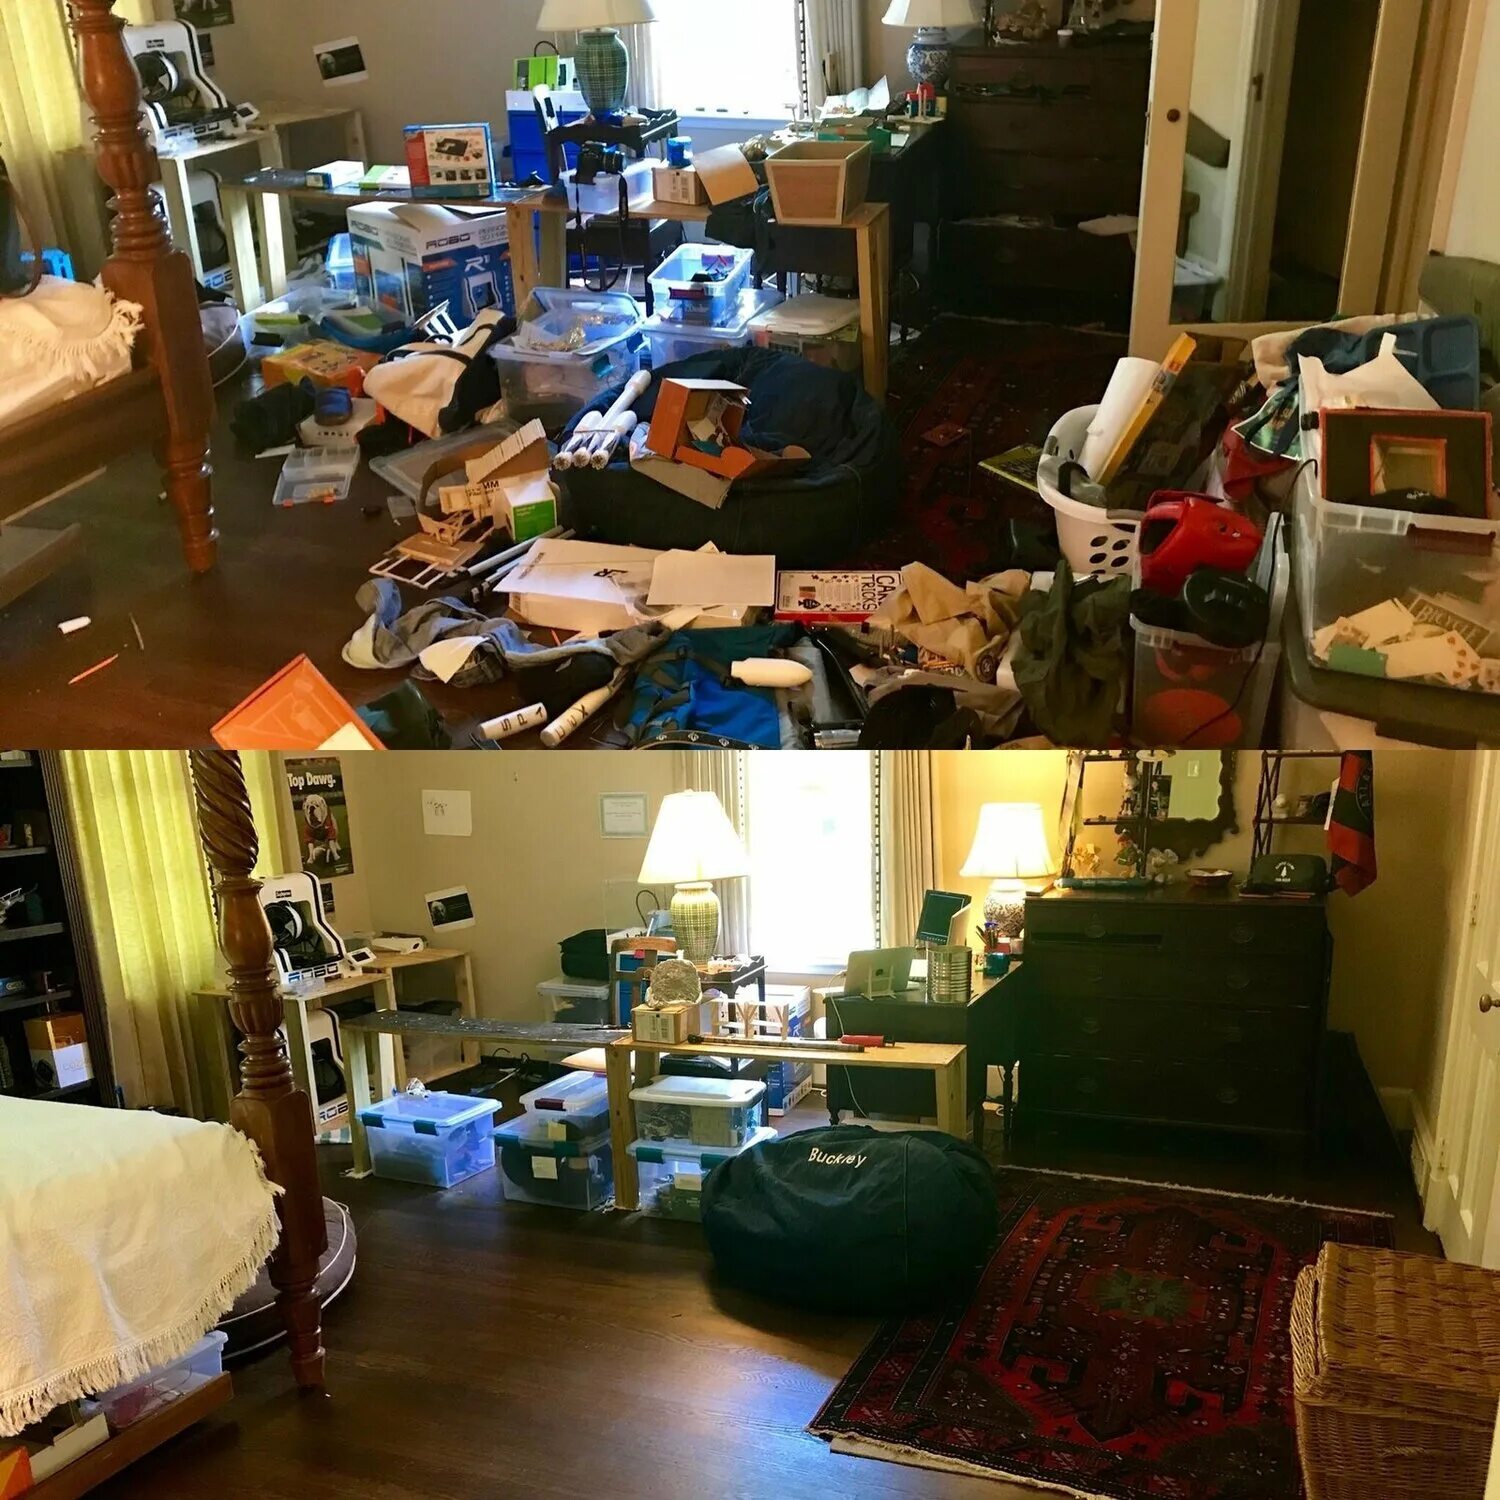 Комната бардак и порядок. Захламленная квартира до и после уборки. Комната до и после уборки. Квартира после уборки. Запусти уборку квартиры